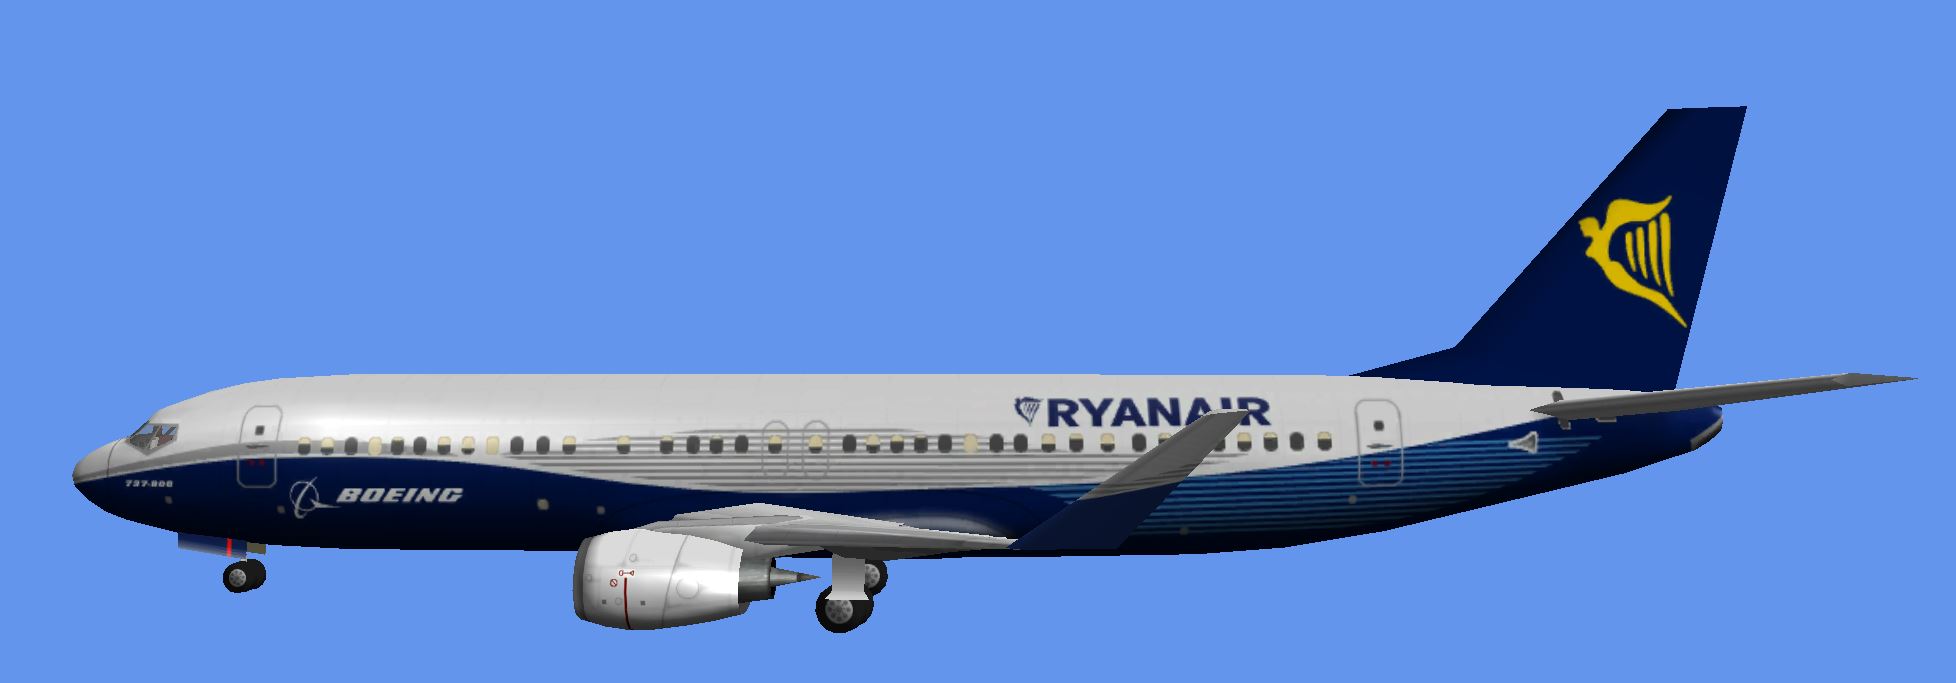 b737-800-dreamliner-ryanair-573fe7d.jpg